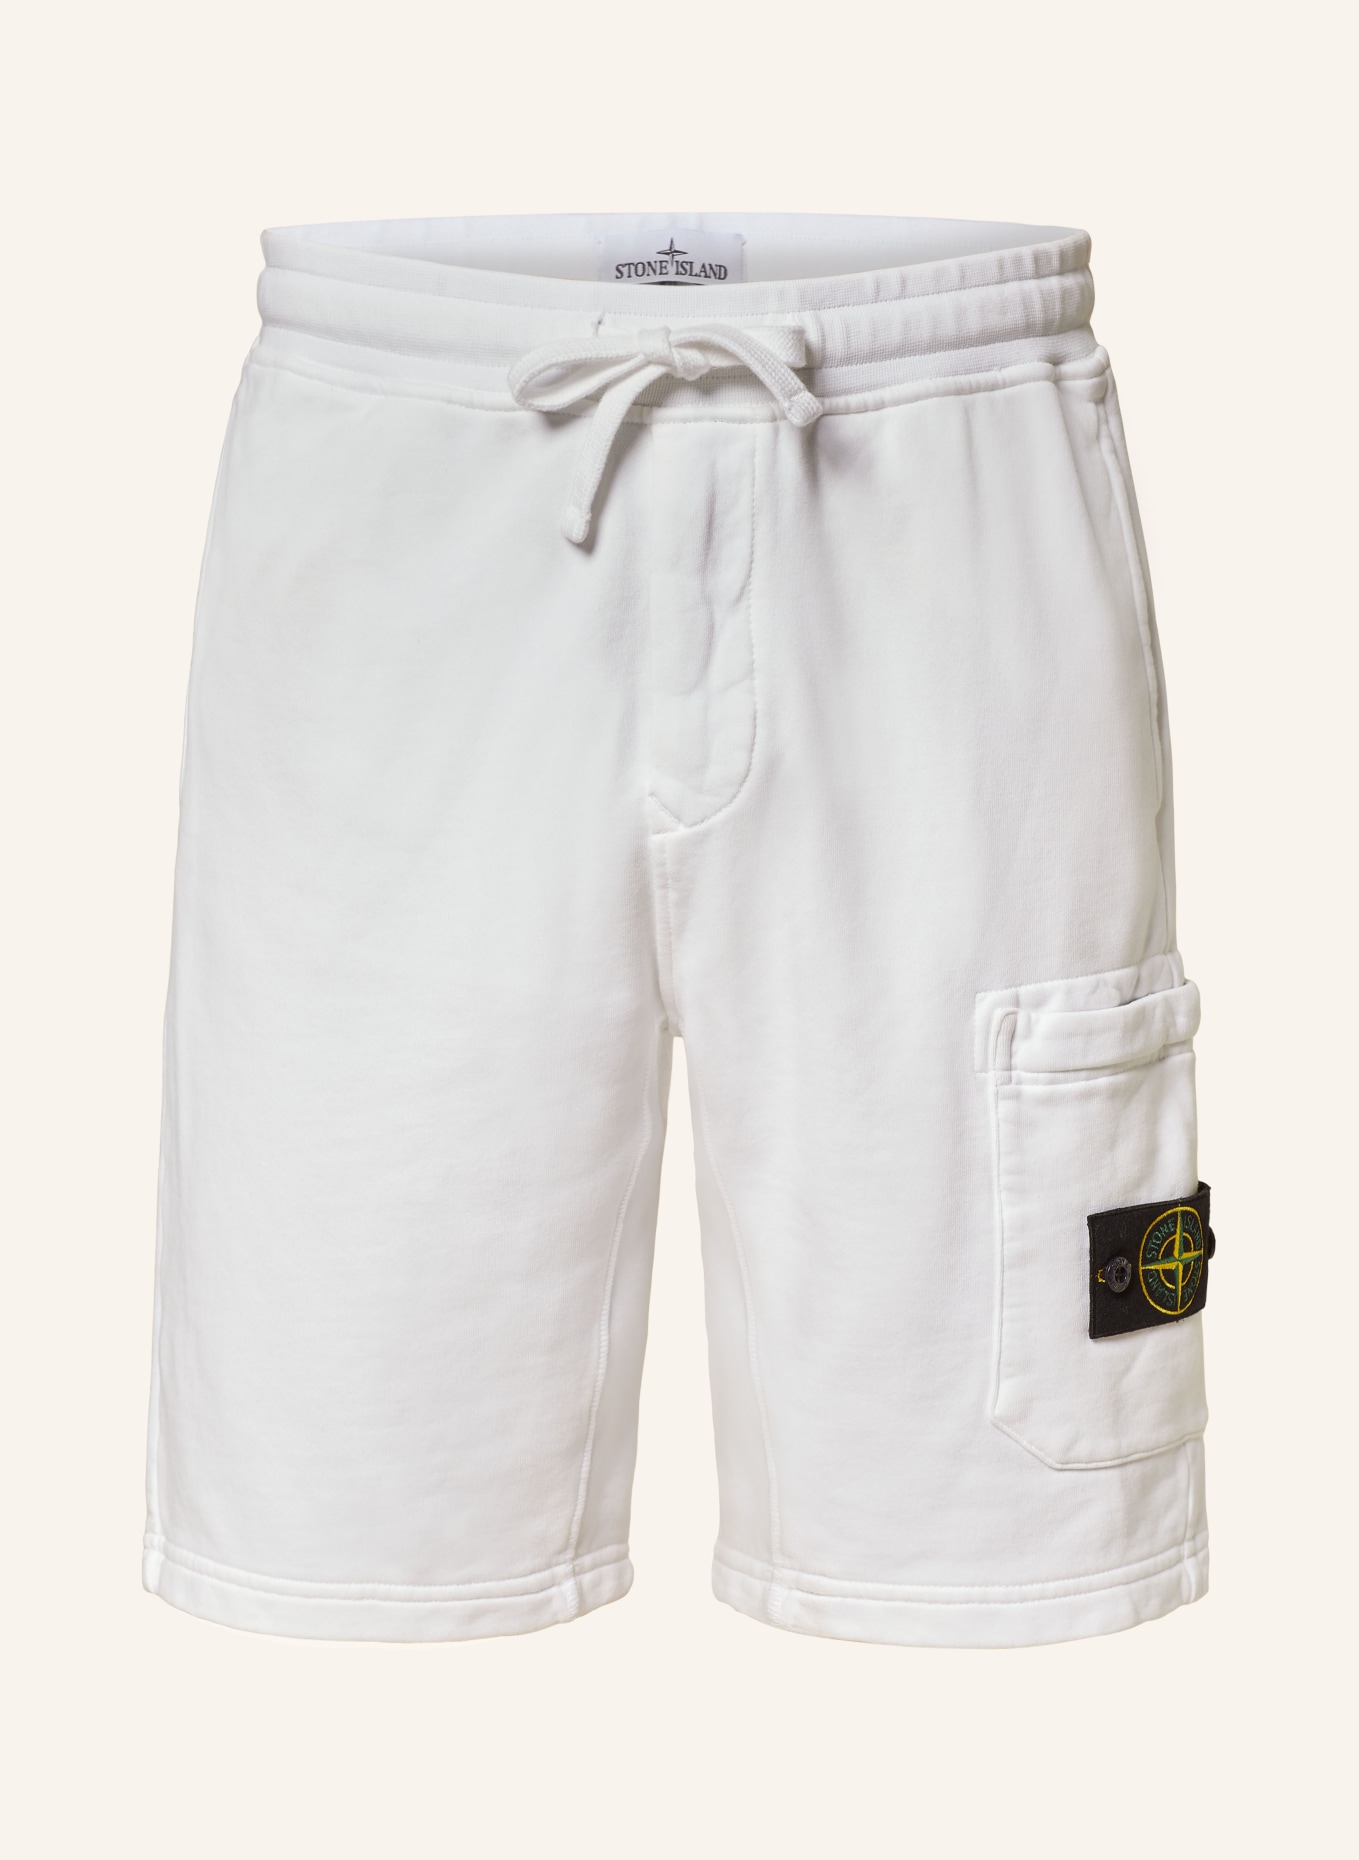 STONE ISLAND Sweat shorts, Color: WHITE (Image 1)